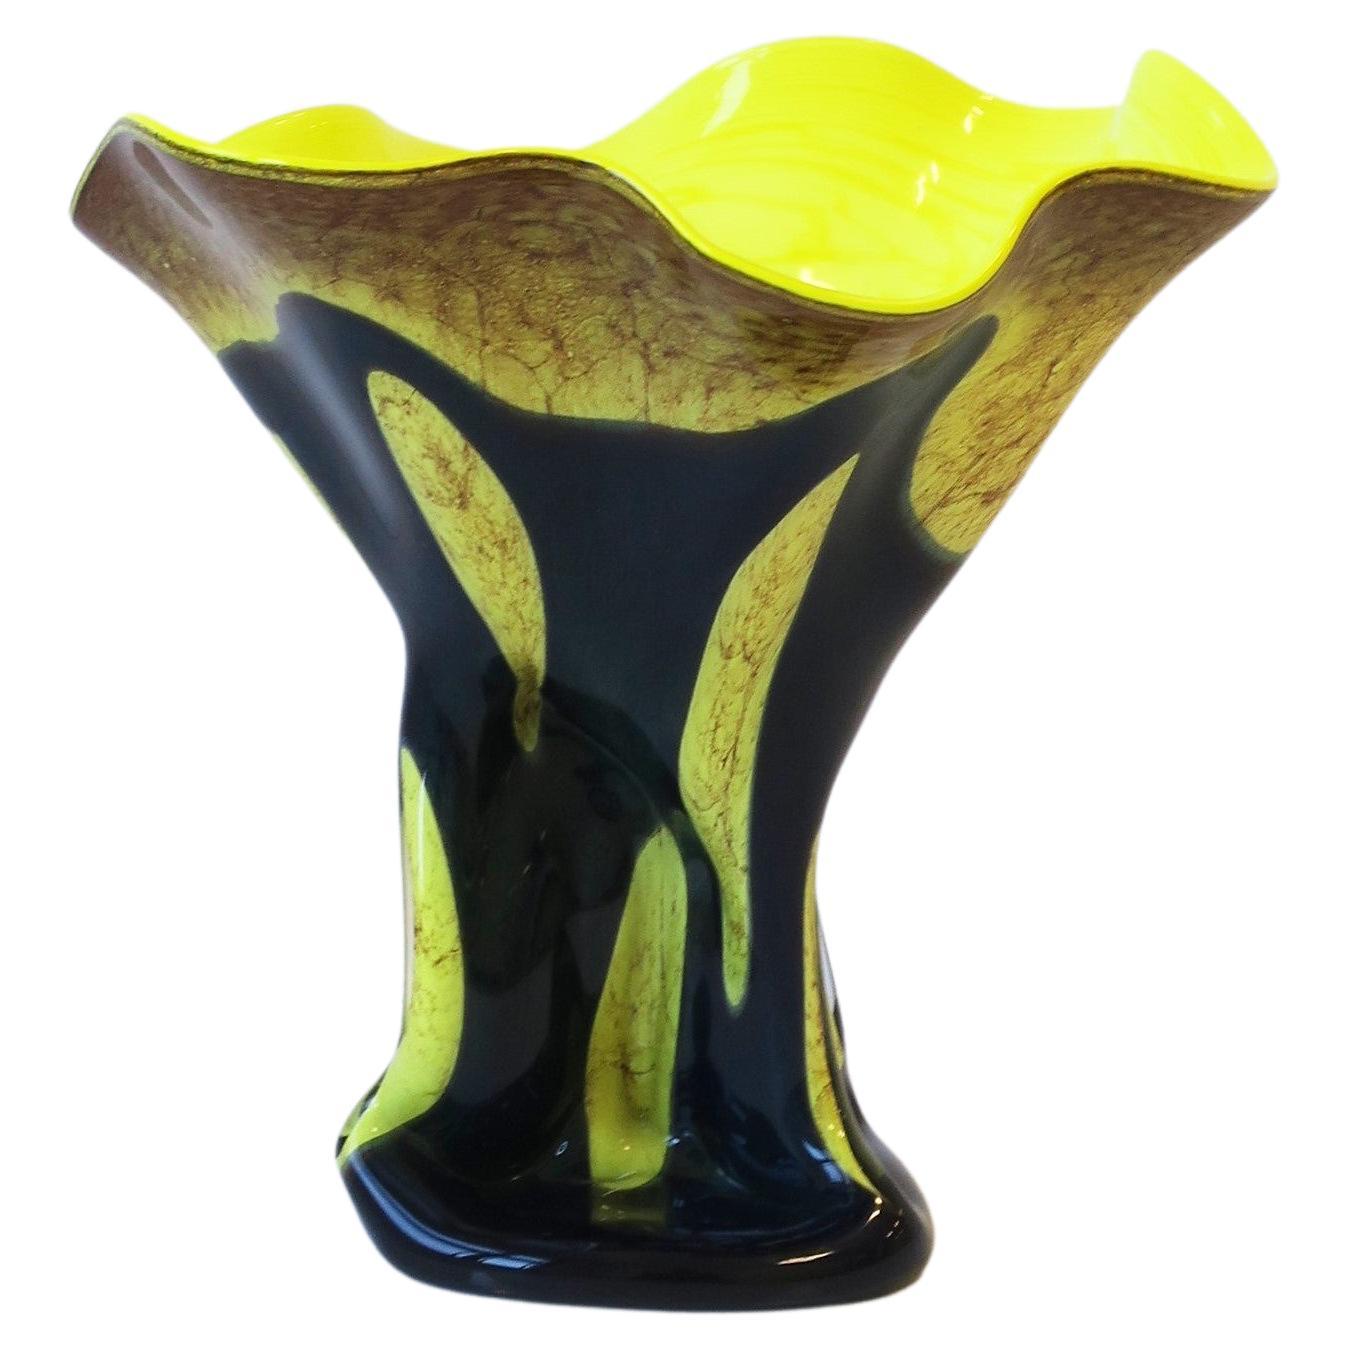 Organic Modern Art Glass Sculpture Vase